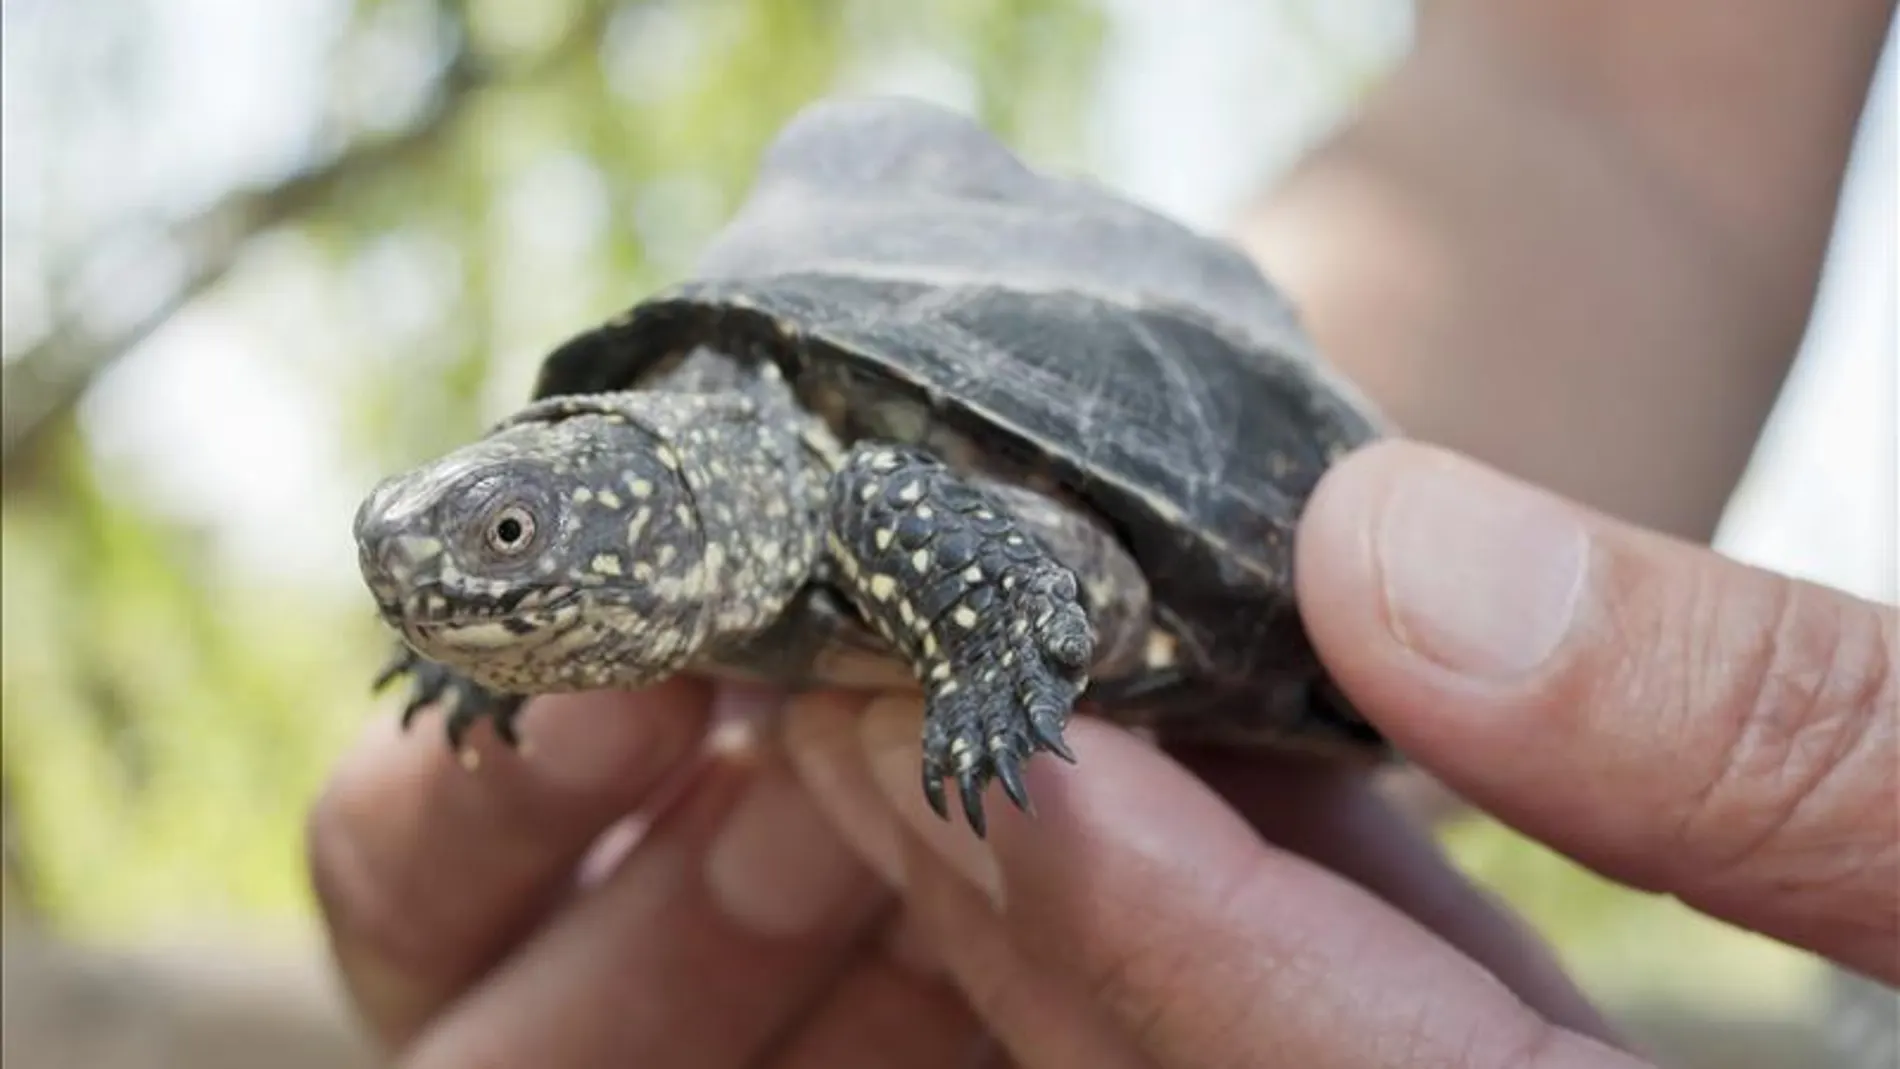 Liberan 70 ejemplares de tortuga lago en Girona para recuperar la especie